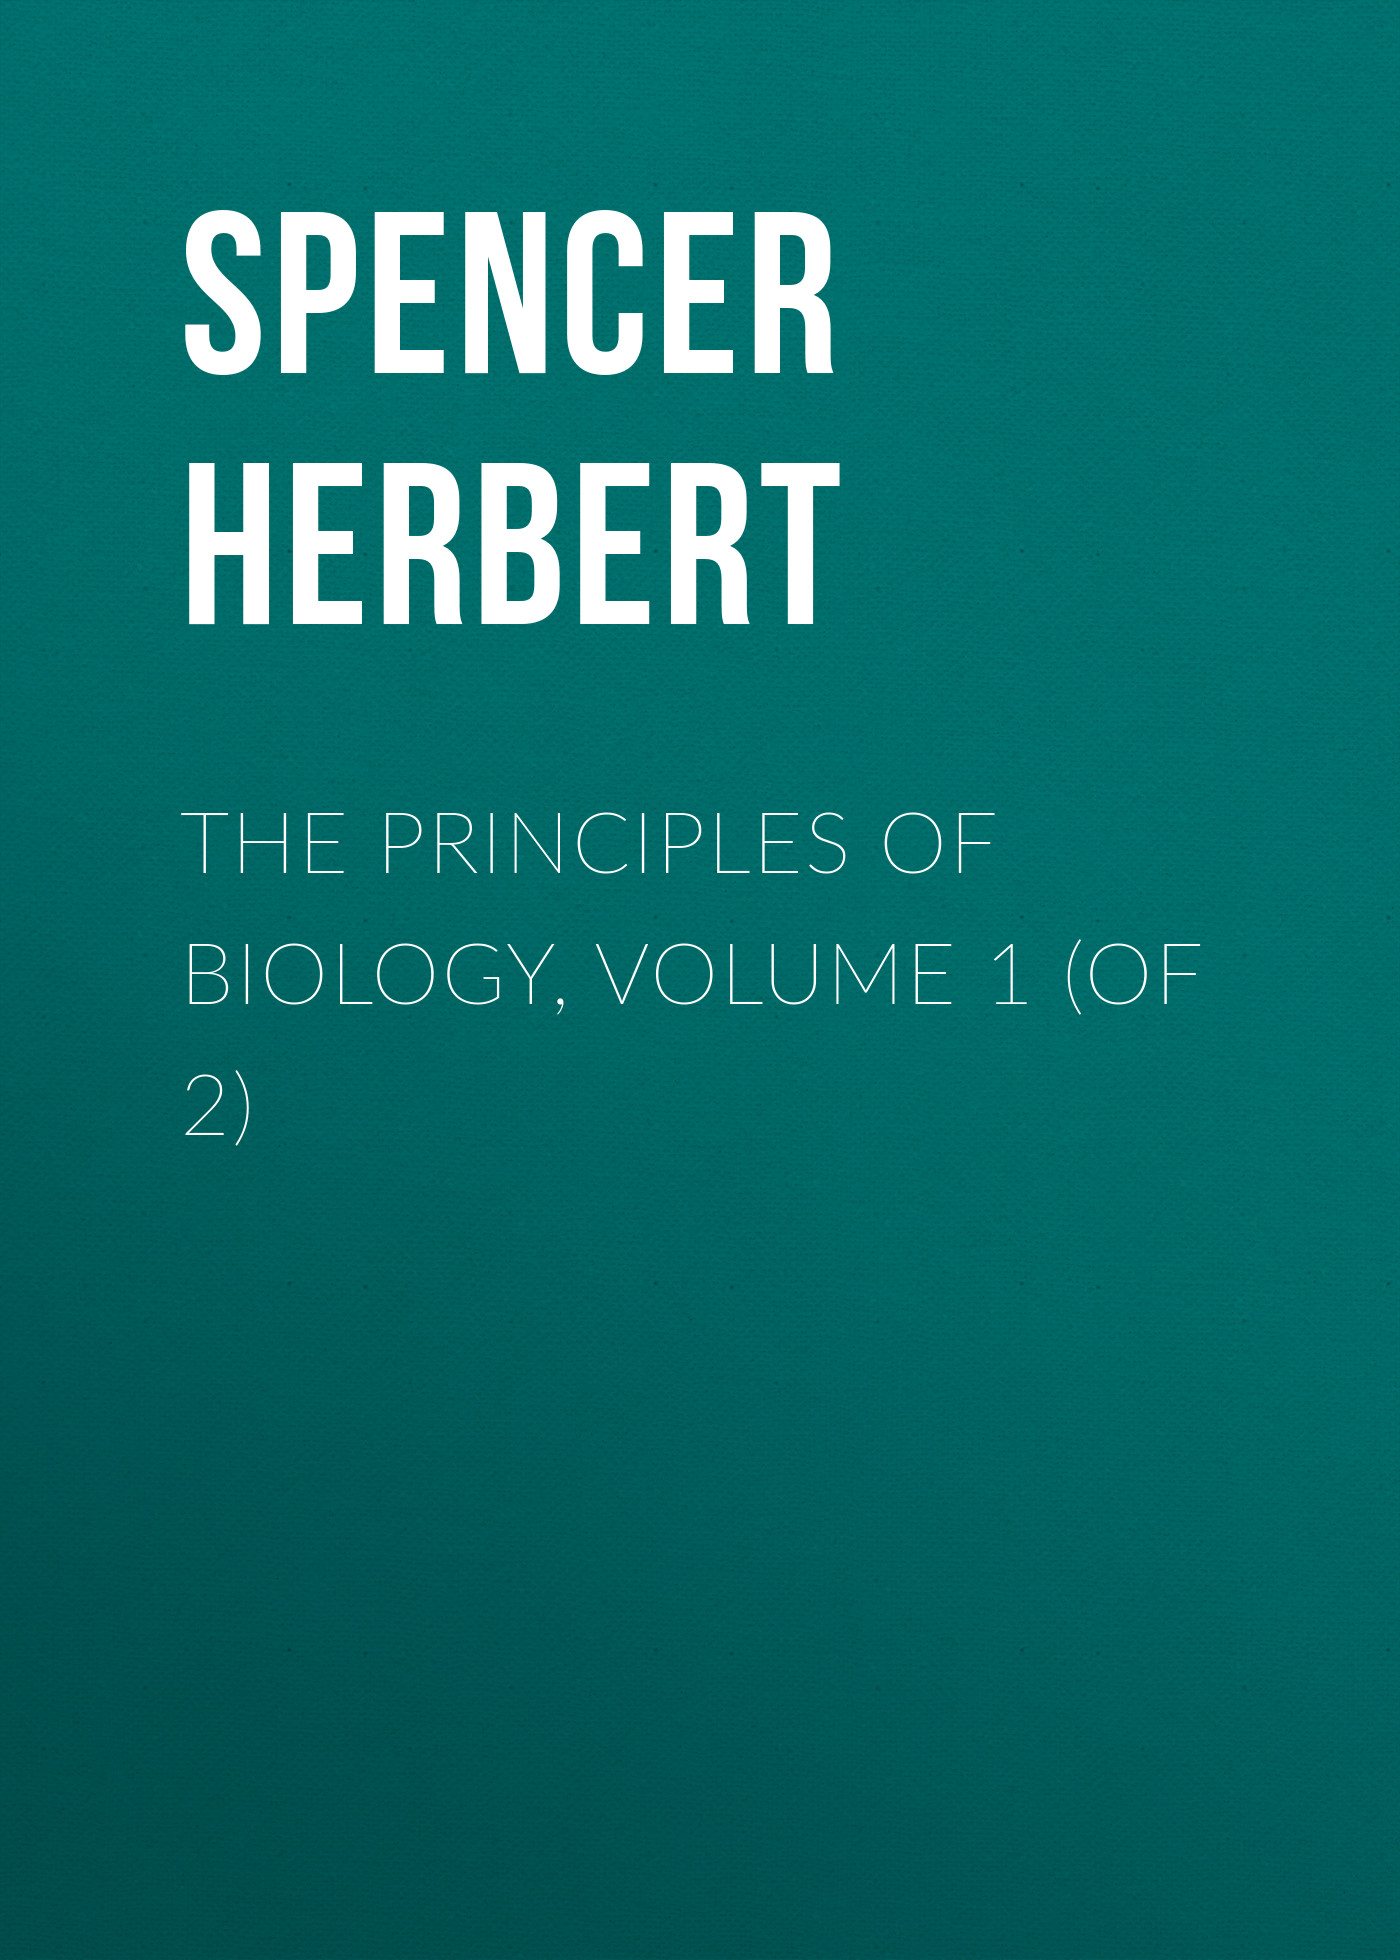 Книга The Principles of Biology, Volume 1 (of 2) из серии , созданная Herbert Spencer, может относится к жанру Философия, Зарубежная старинная литература, Зарубежная классика. Стоимость книги The Principles of Biology, Volume 1 (of 2)  с идентификатором 25475255 составляет 0 руб.